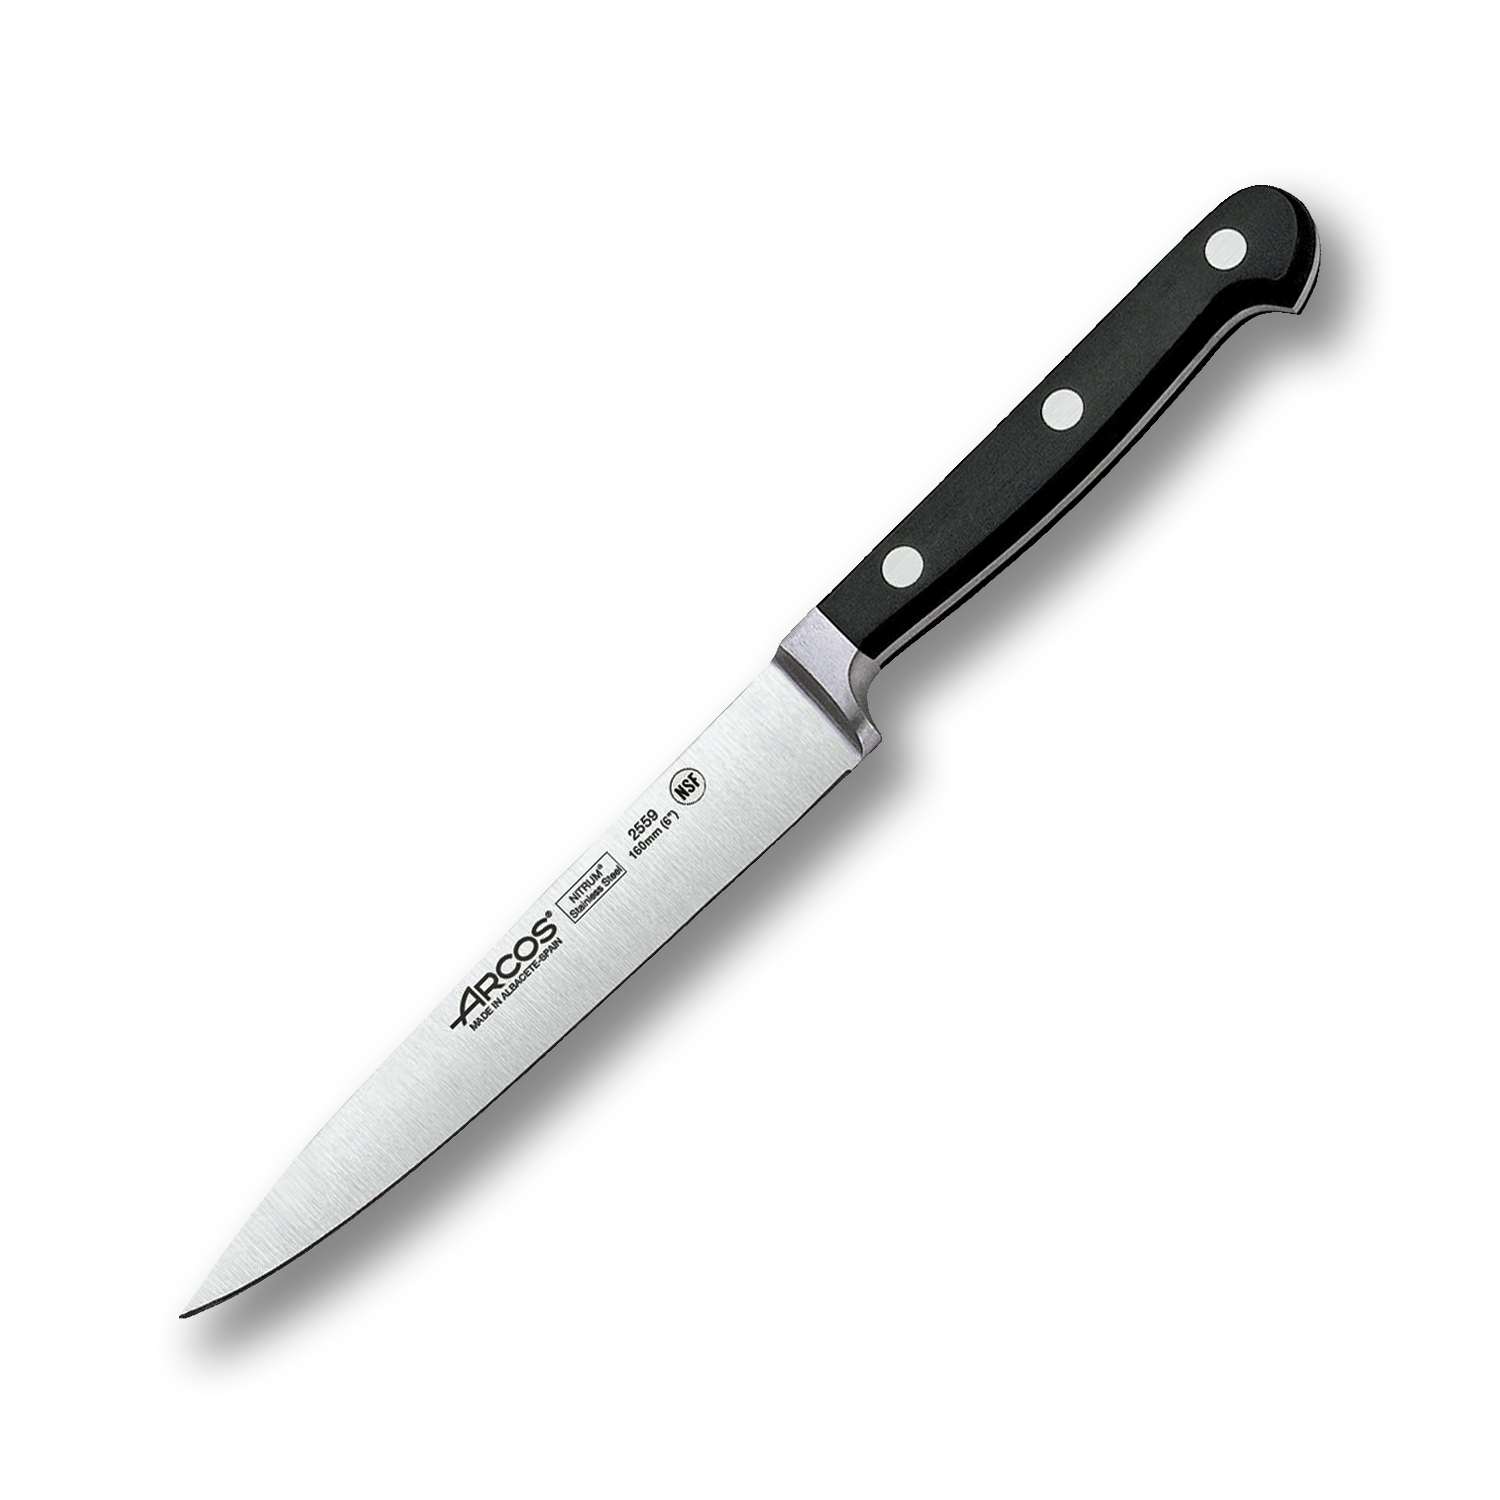 Универсальный кухонный нож Arcos 16 см, кованая молибден-ванадиевая нержавеющая сталь X45CrMoV15, 2559